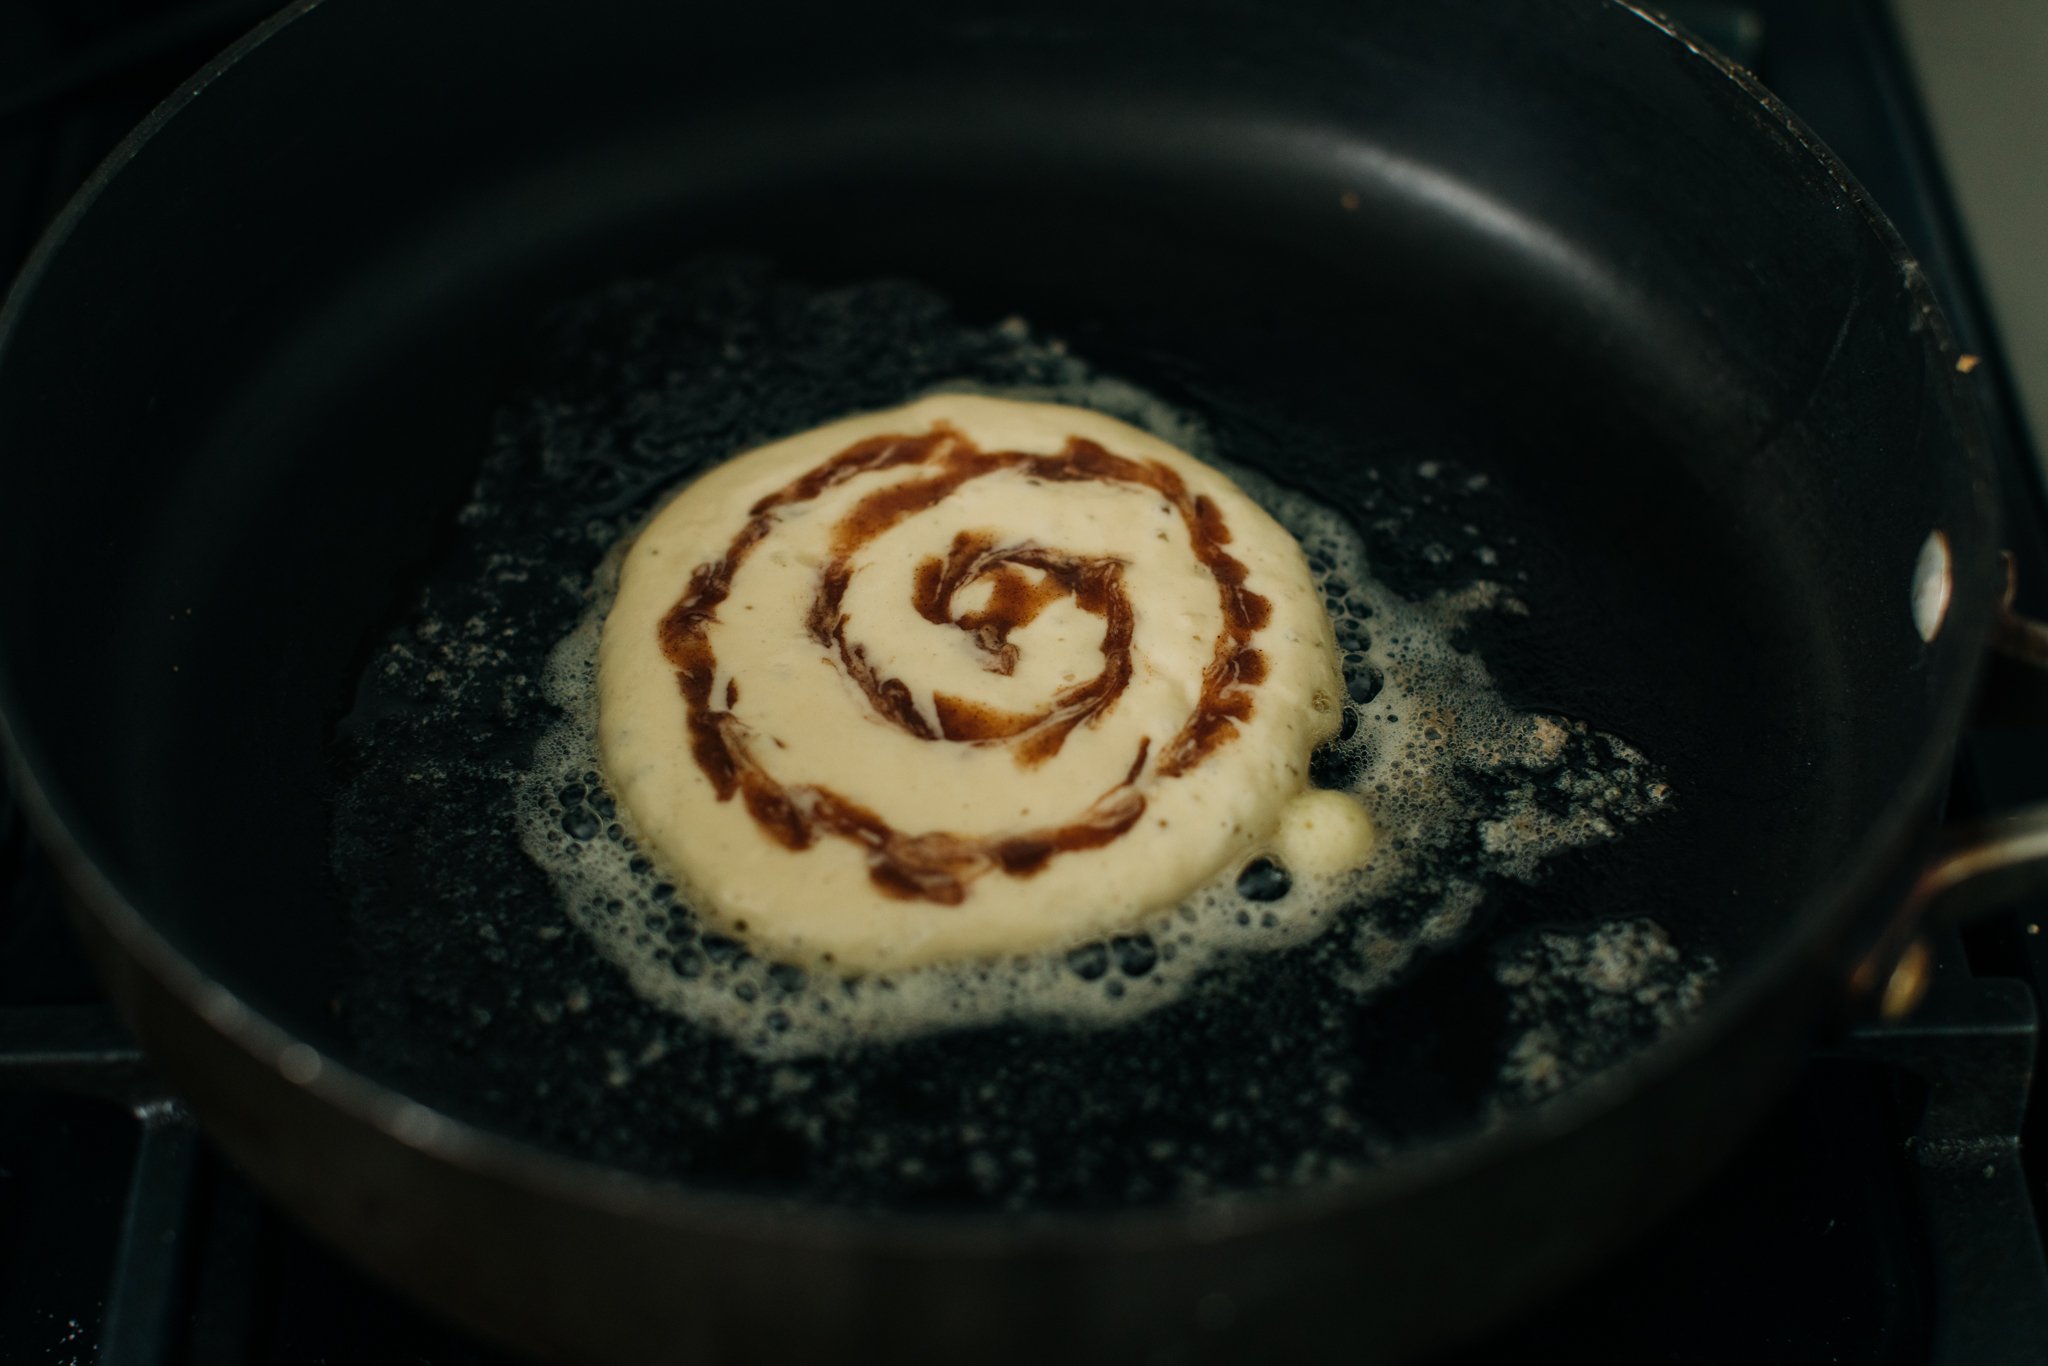 cinnamon-roll-pancakes-recipe-jacqui-saldana-10.jpg